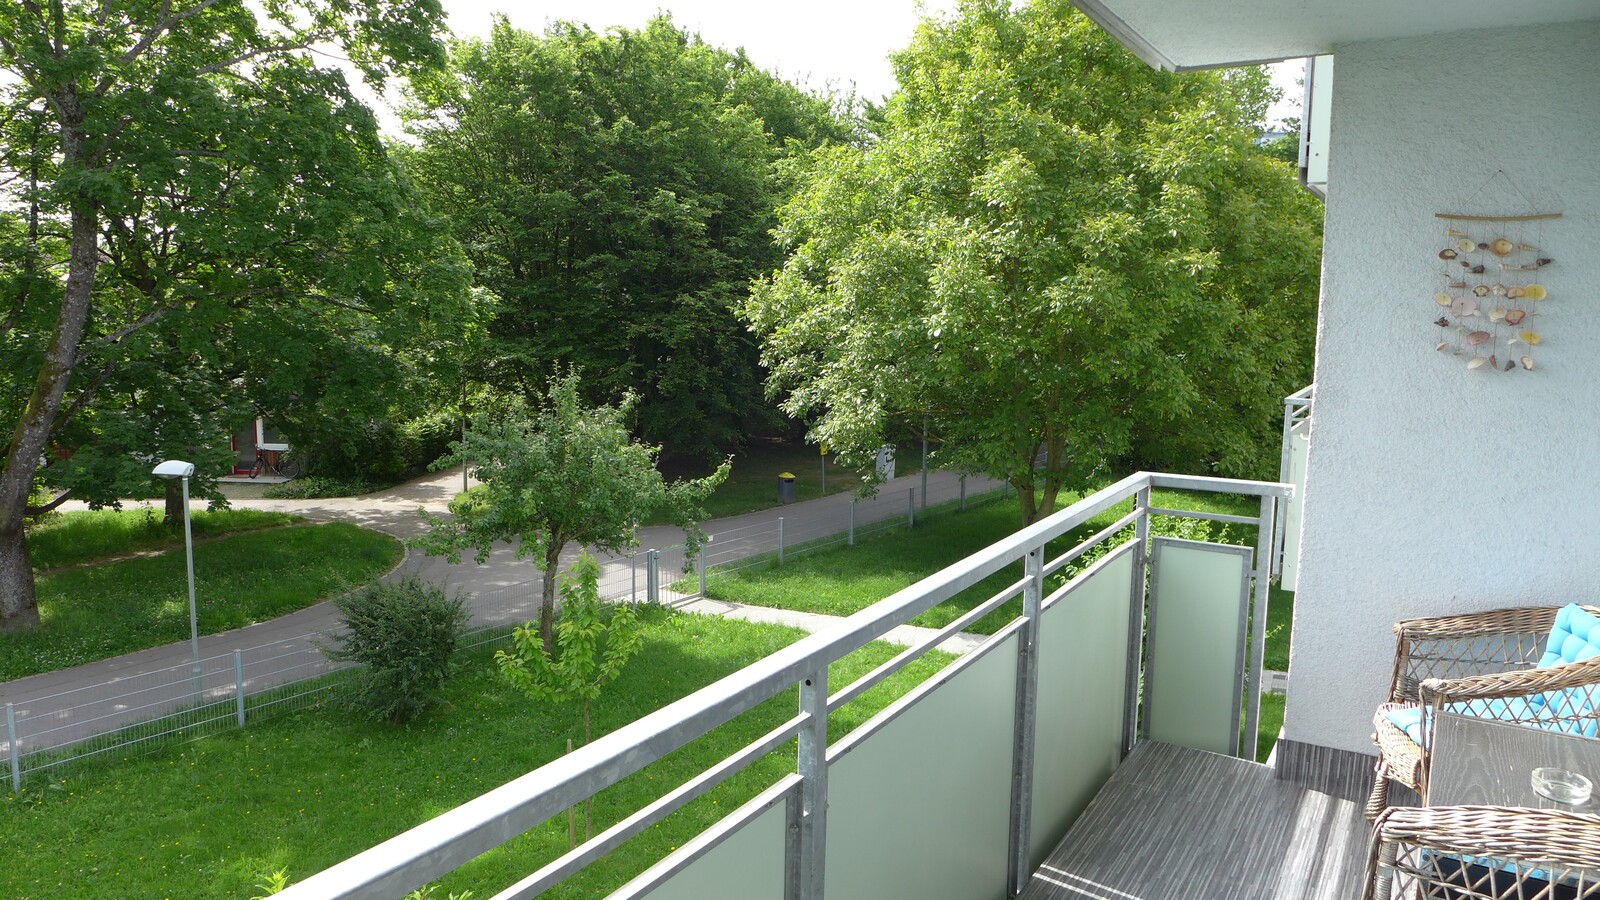 Aussicht von einem Balkon über den angrenzenden Gehweg ins Grüne